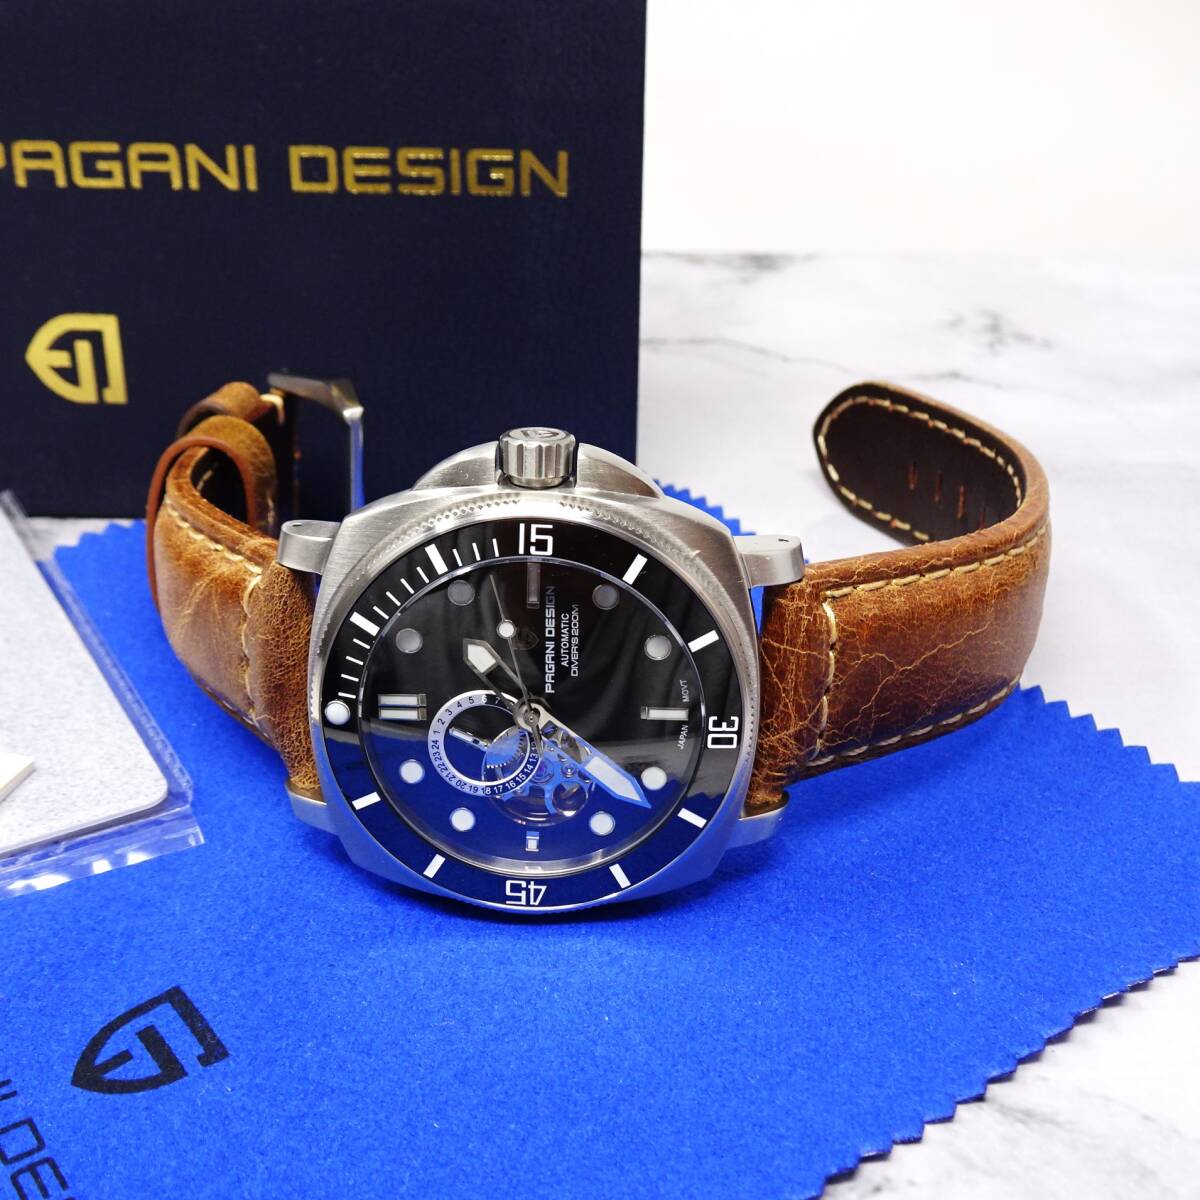 送料無料・〓新品〓腕時計 パガーニデザイン PAGANI DESIGN 機械式・NH39Ａ・オープンハート・ビンテージ加工ベルト・サファイア・PD-1736_画像9